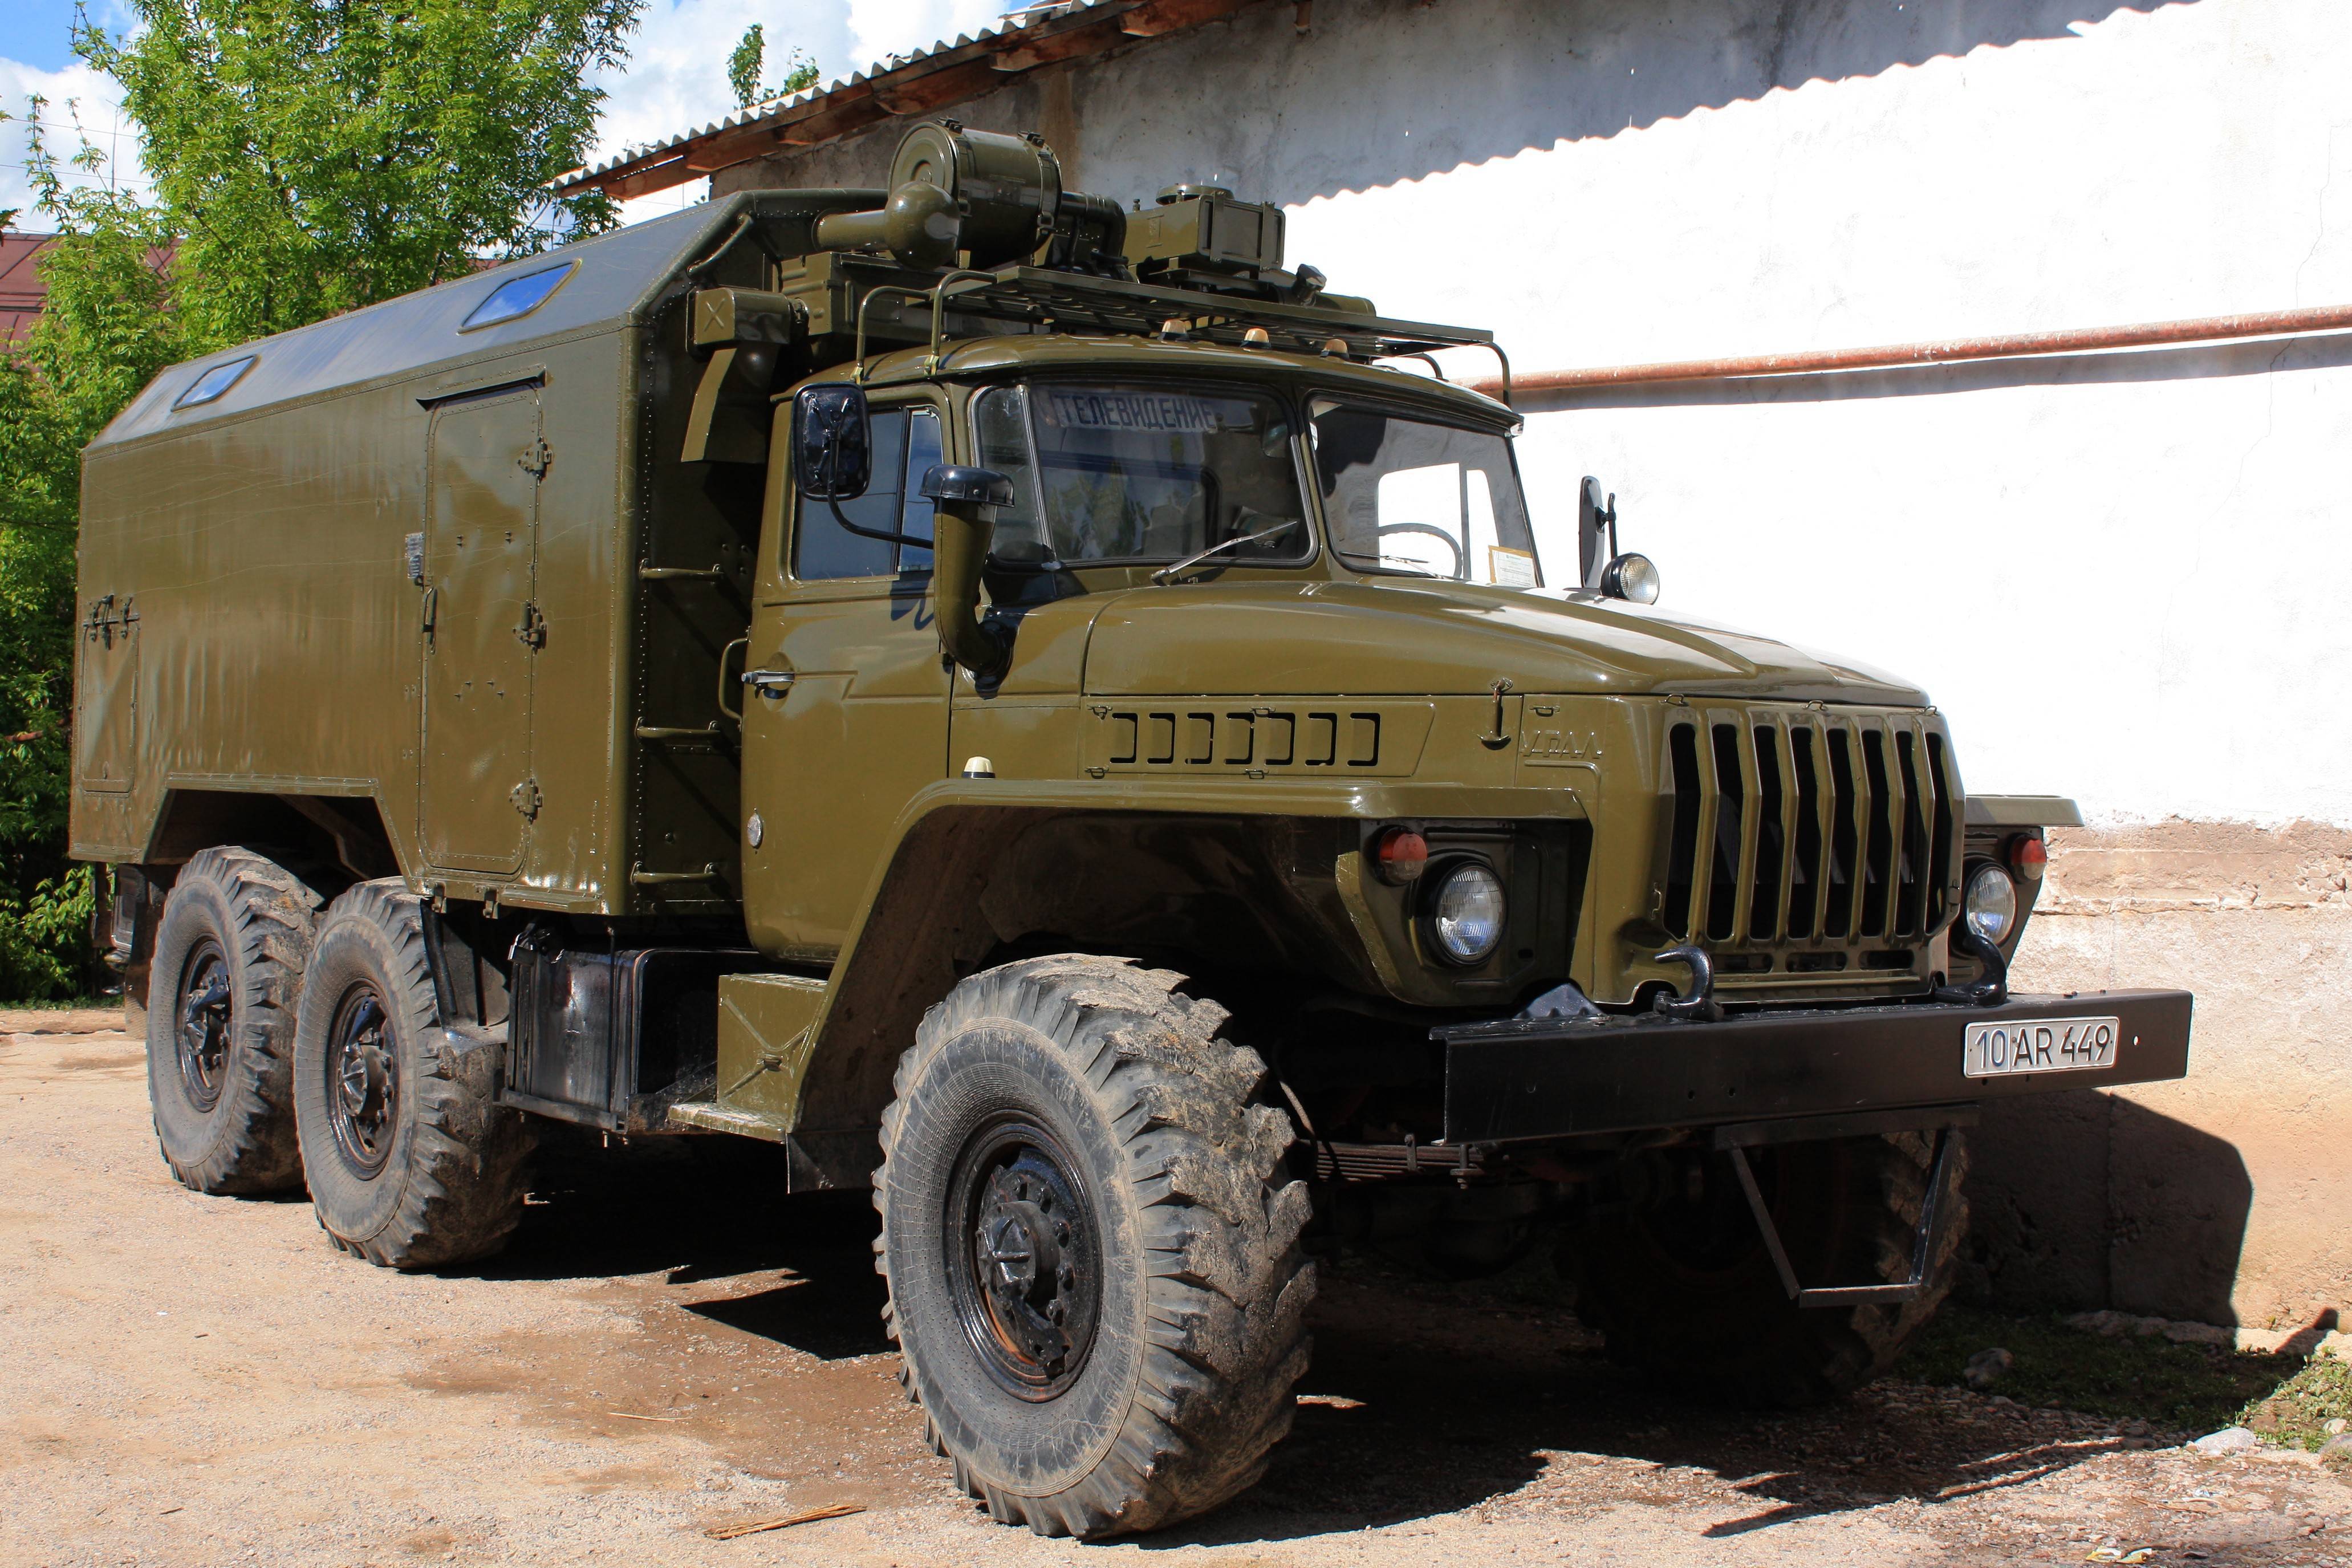 Урал-4320: технические характеристики, грузоподъёмность, расход топлива на 100 км, военный с консервации